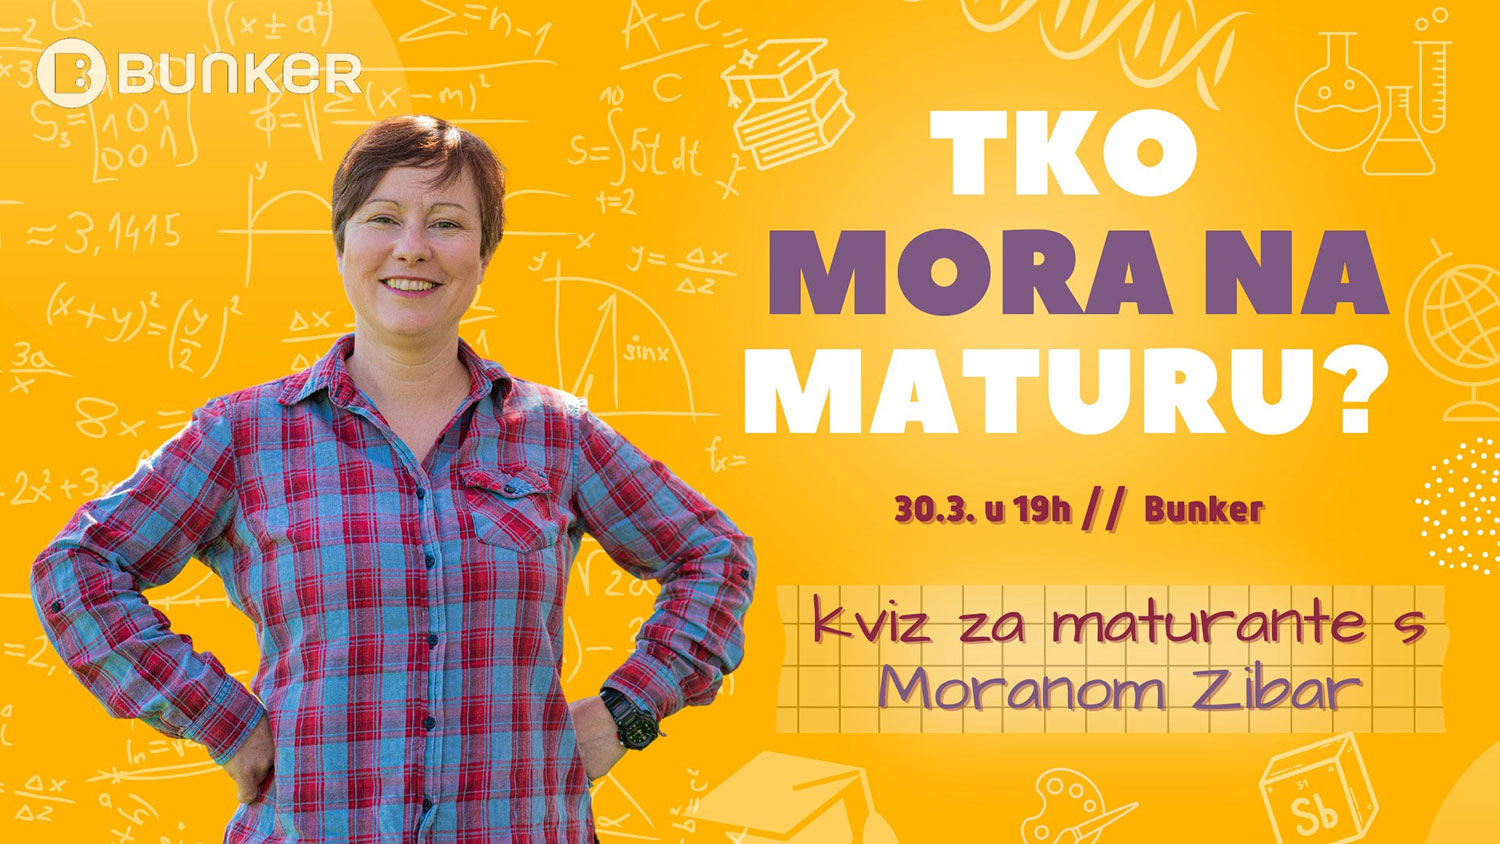 Lovkinja Morana Zibar provjerit e znanje samoborskih srednjokolaca  